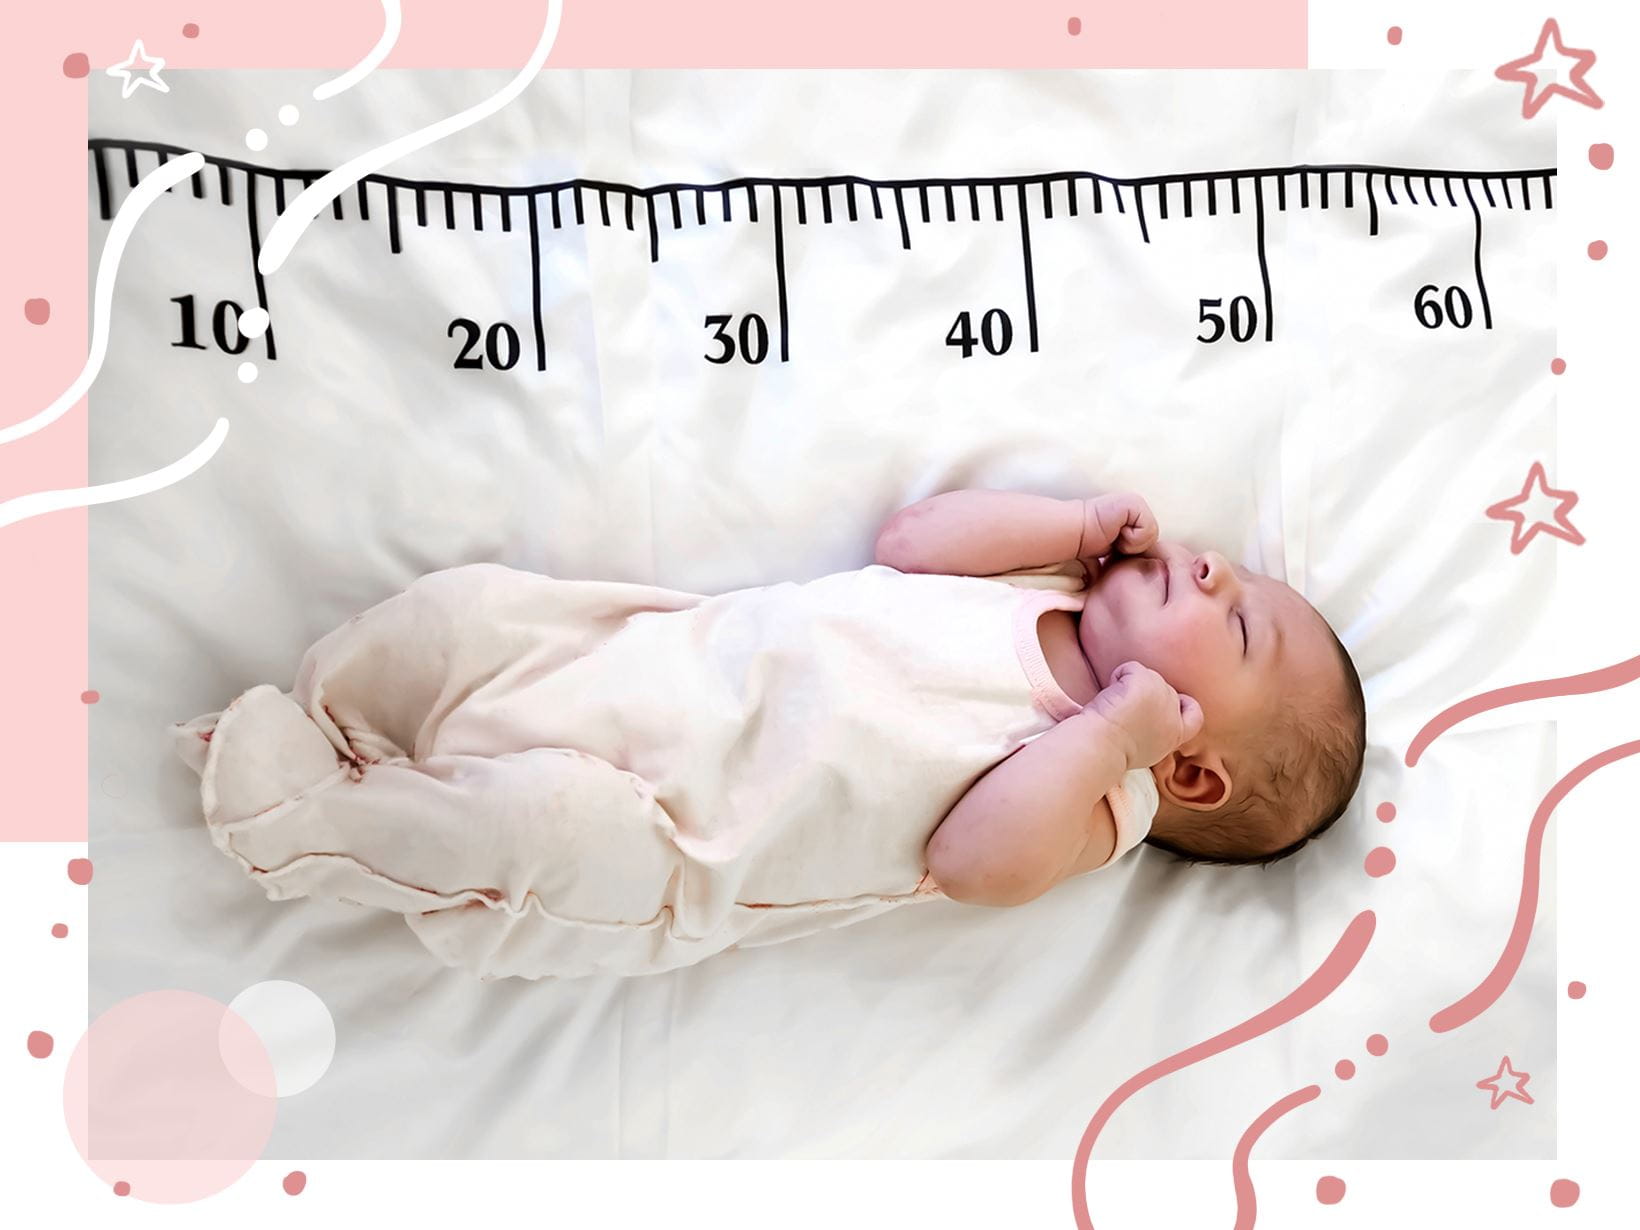 Waga dziecka po urodzeniu. Co musisz wiedzieć na temat wagi urodzeniowej?